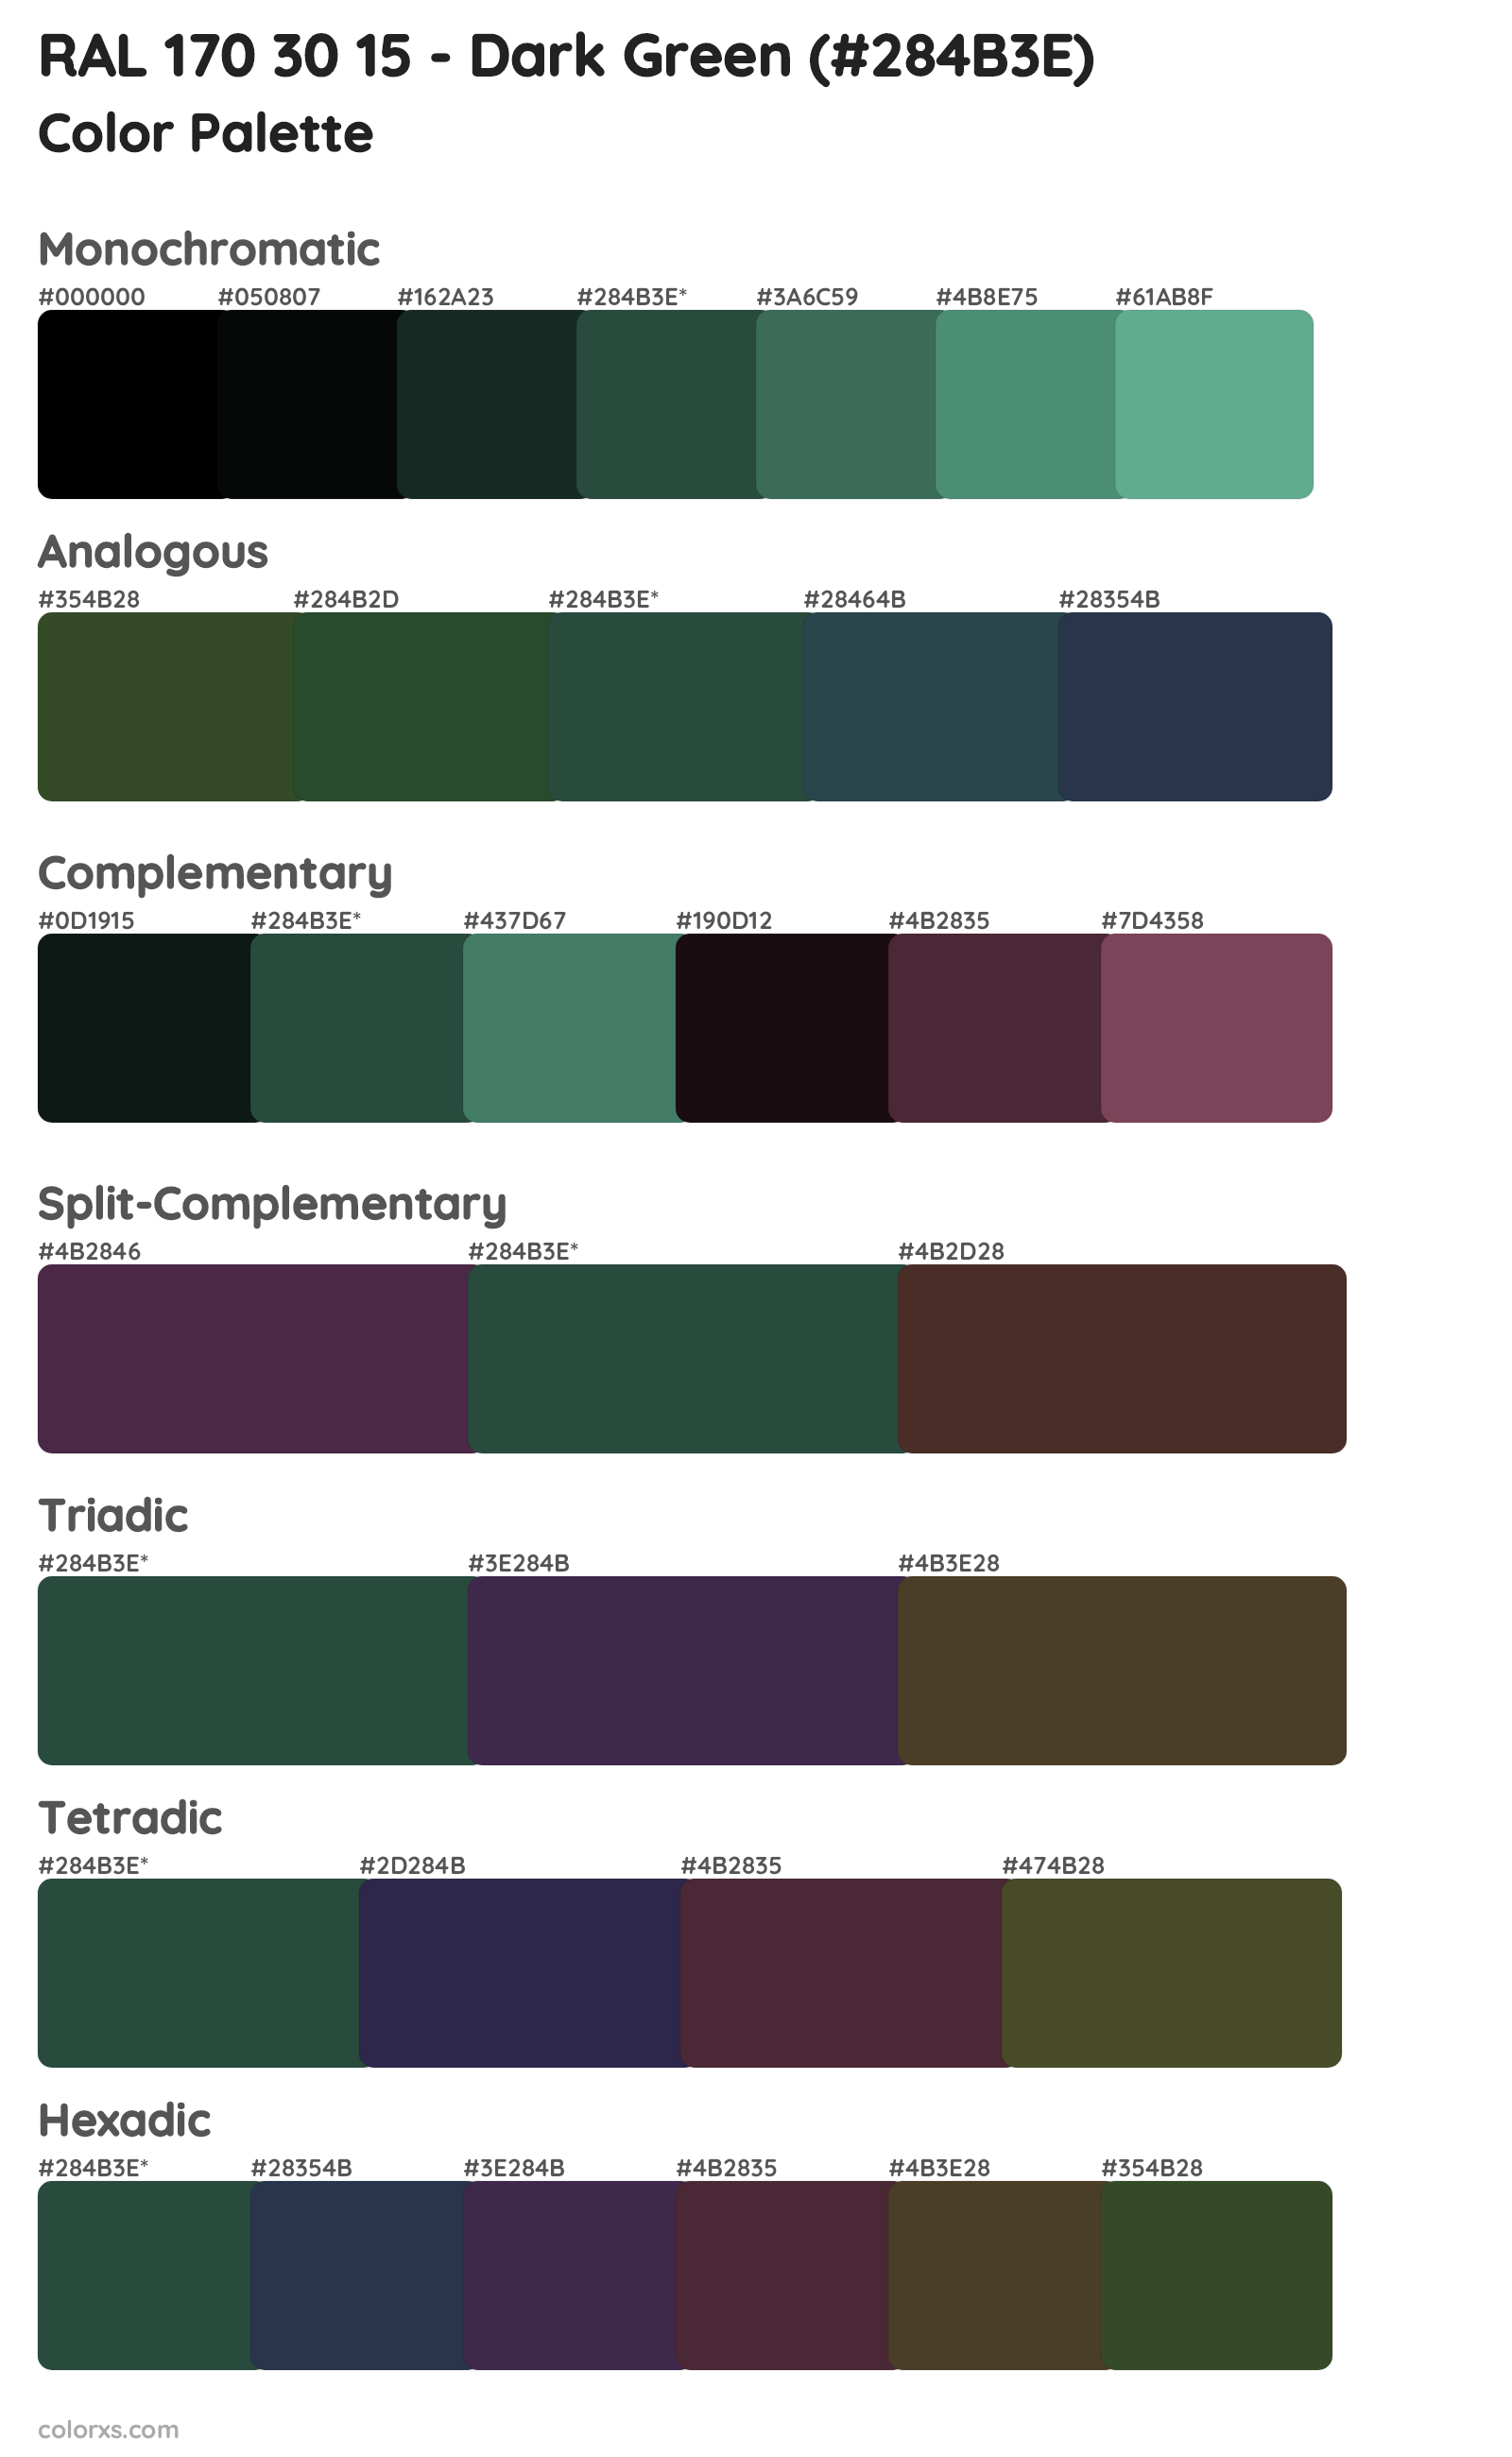 RAL 170 30 15 - Dark Green Color Scheme Palettes